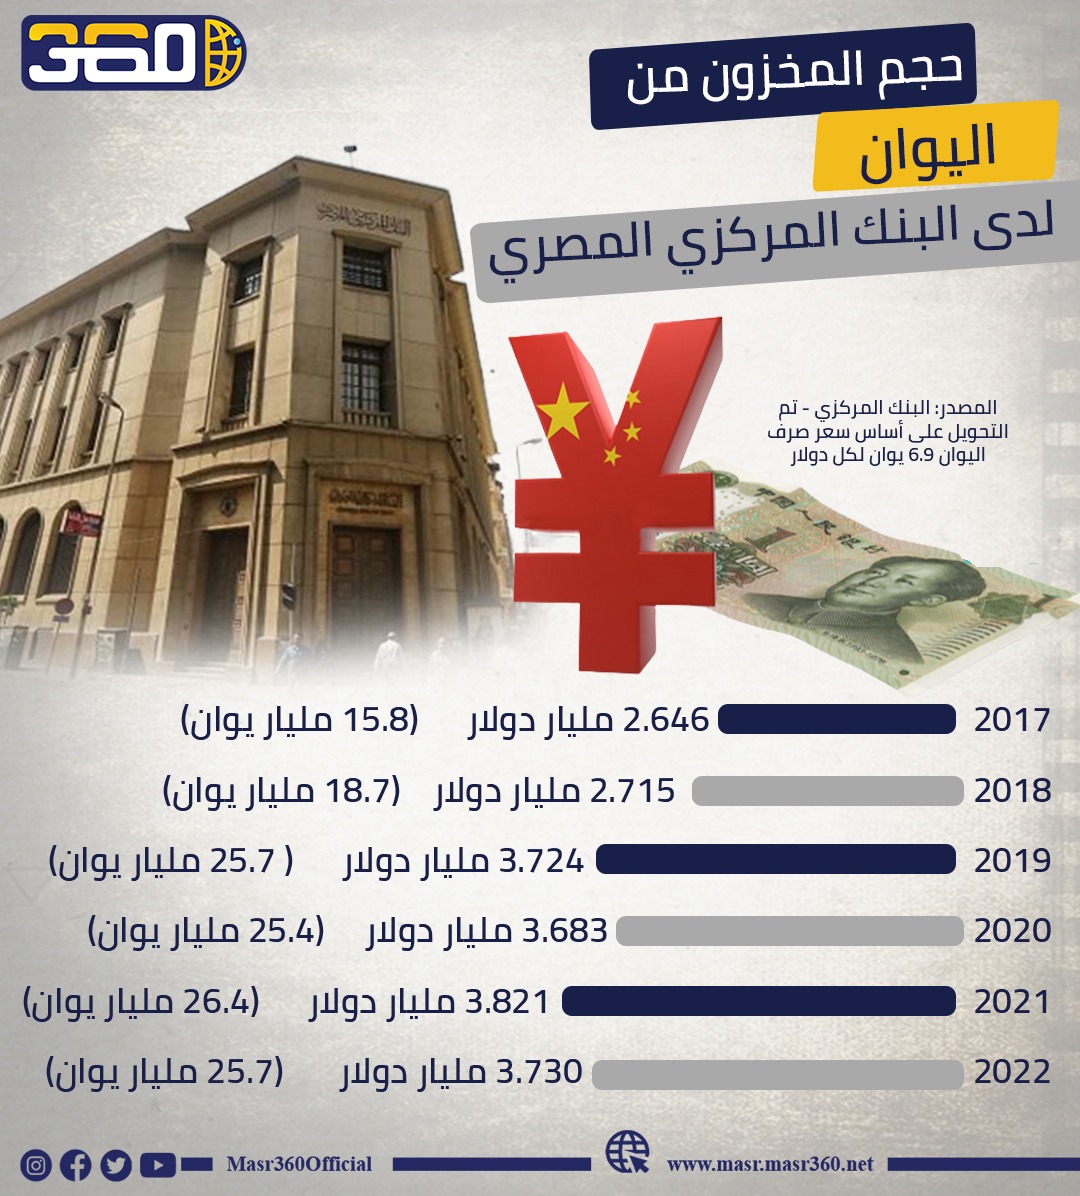 حجم المخزون من اليوان لدى البنك المركزي المصري